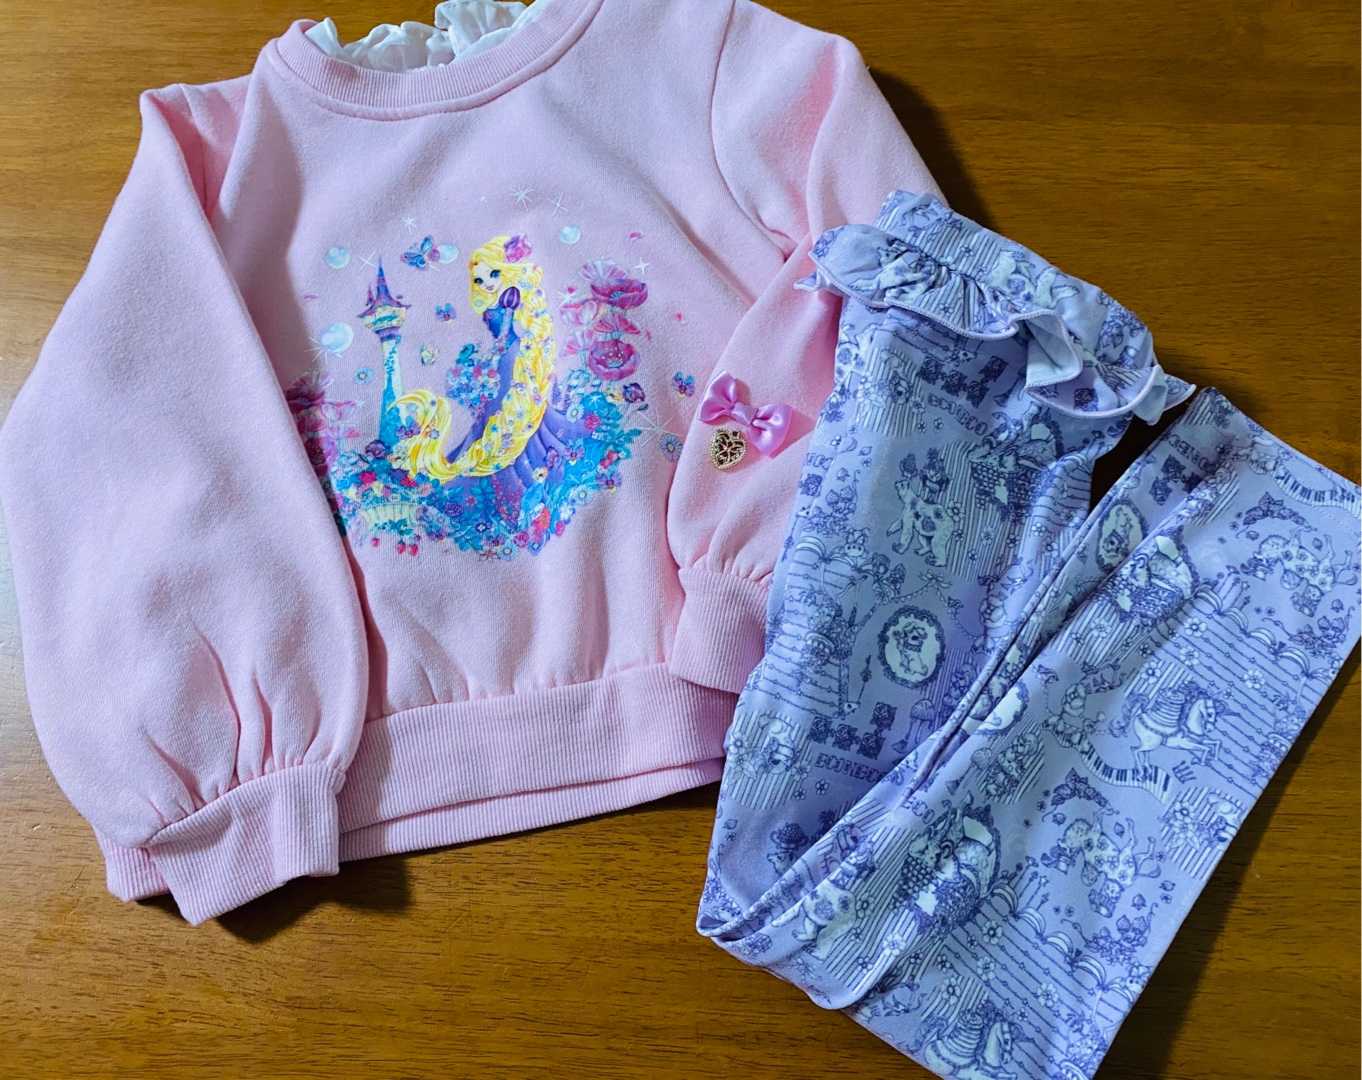 ディズニー みかづきの子供服お買い物ブログ 楽天ブログ